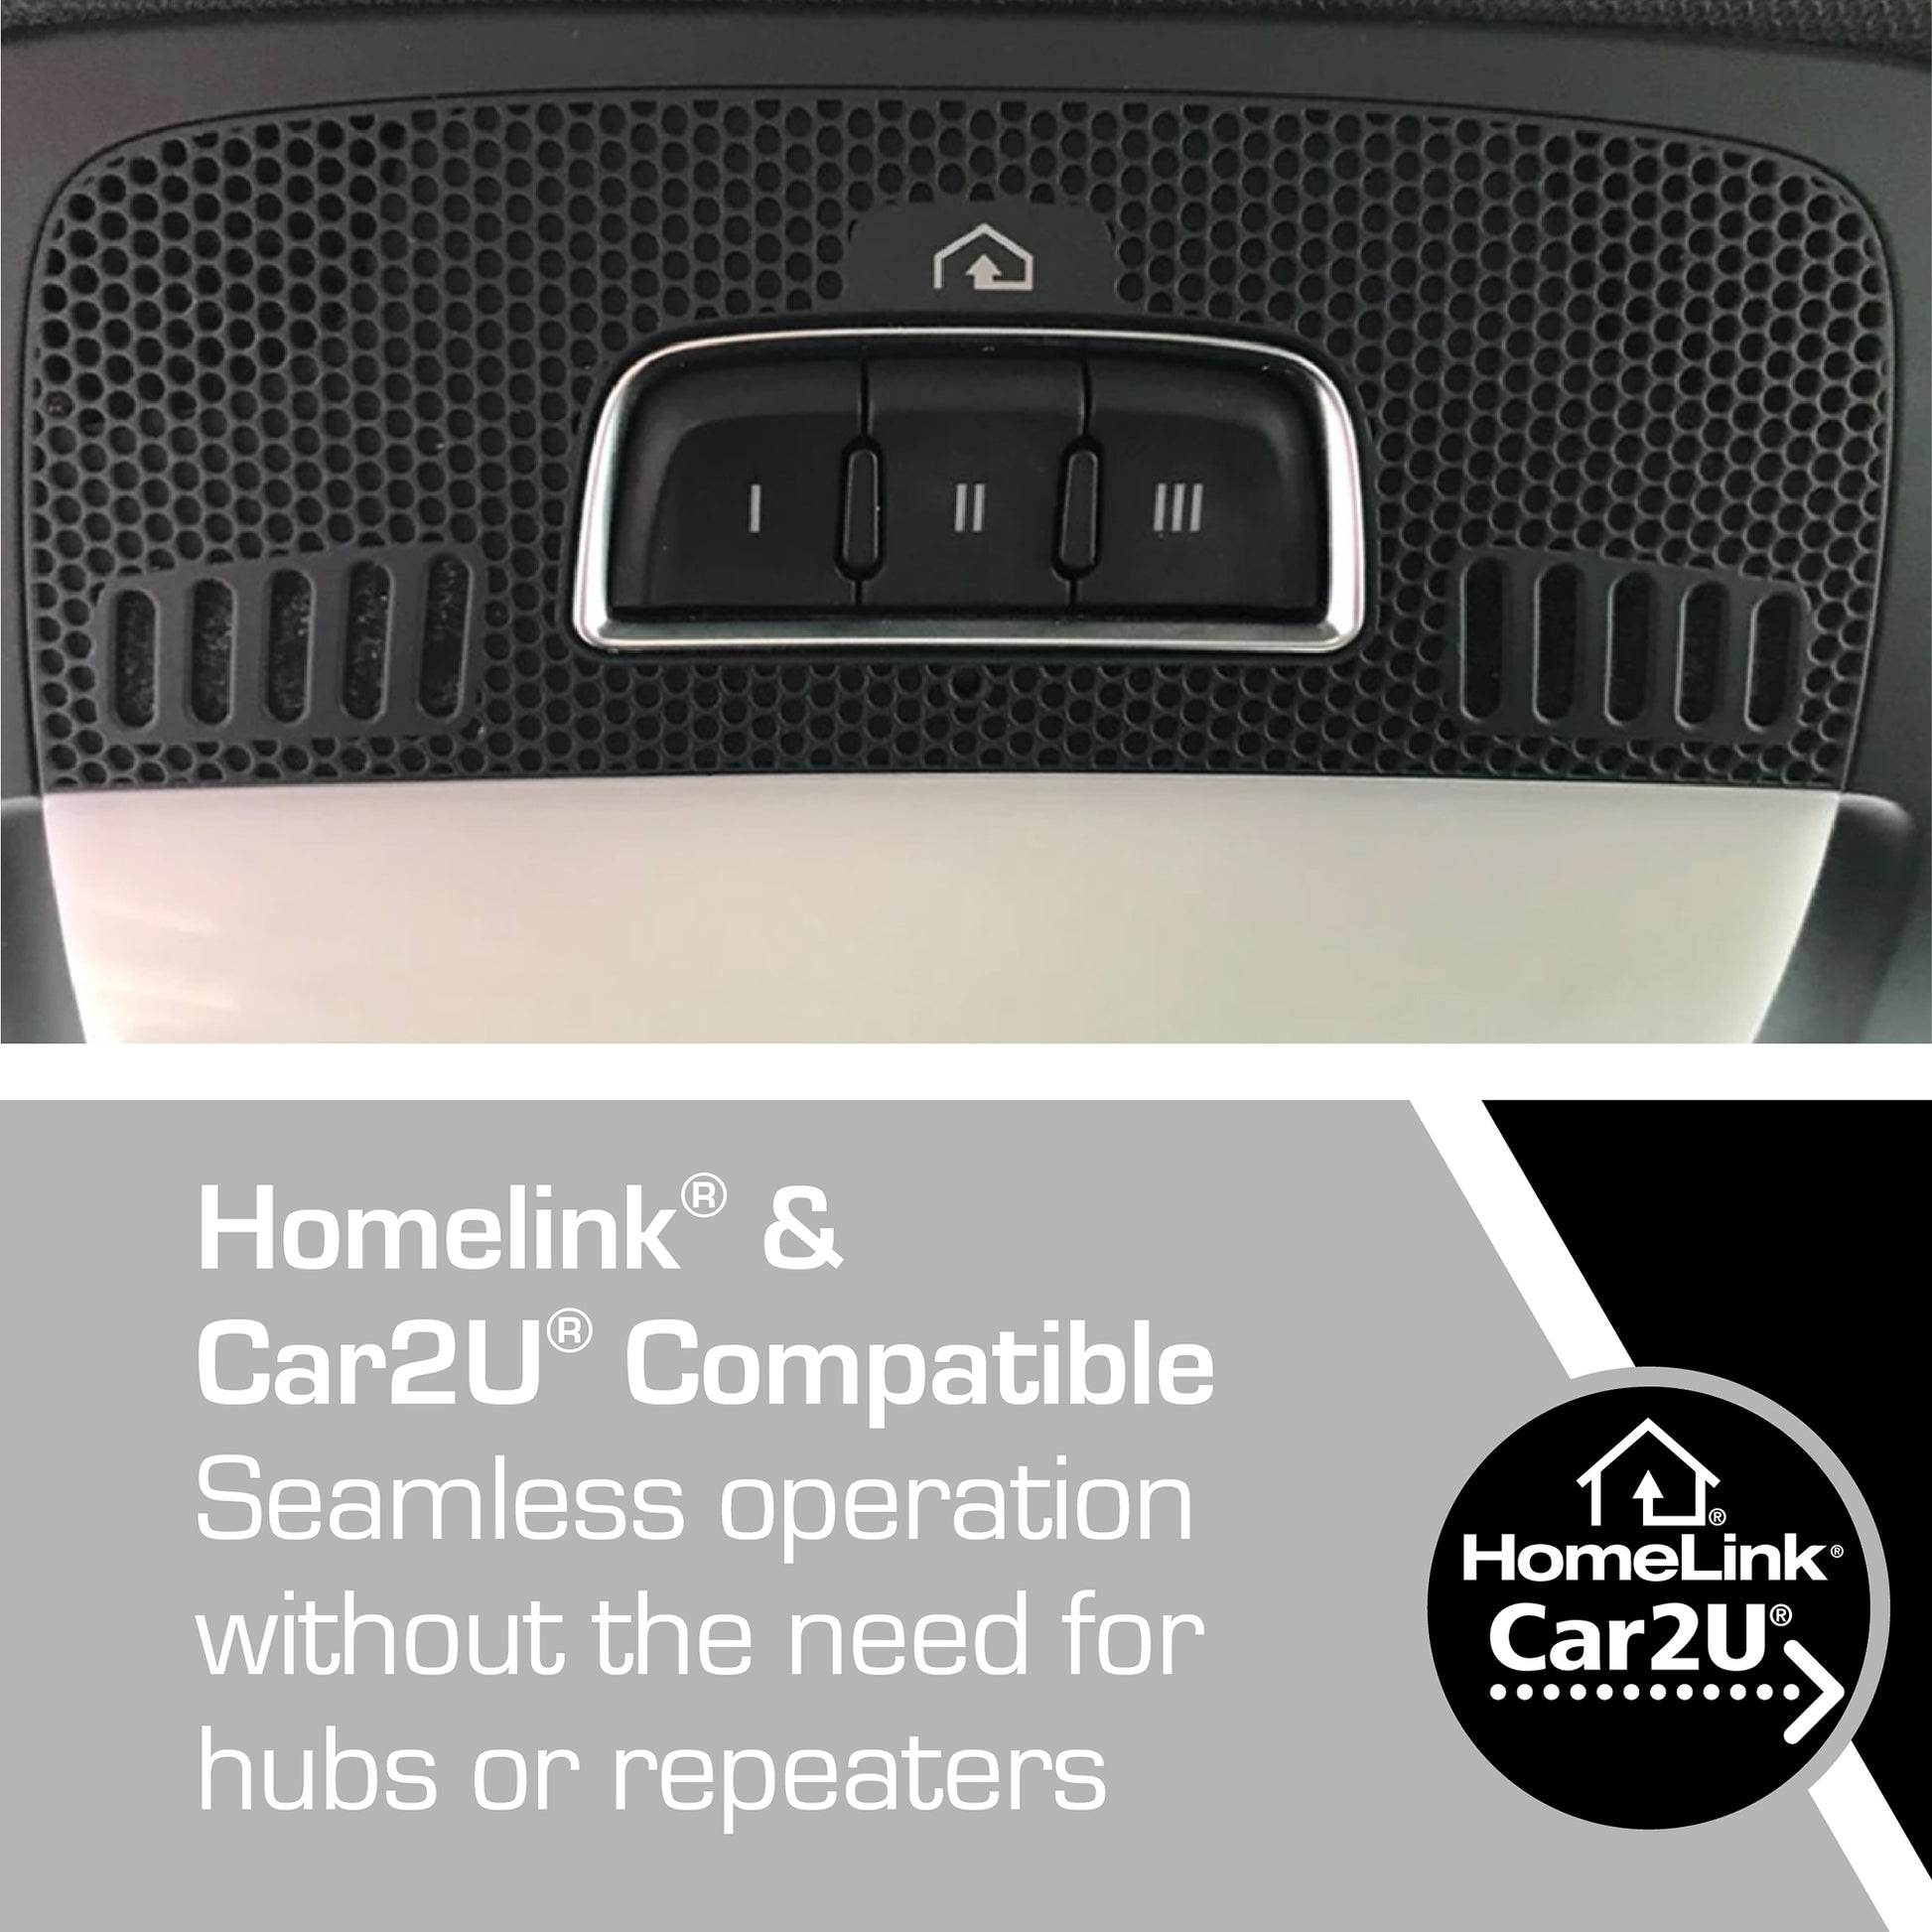 This garage door opener is compatible with Homelink and Car2U